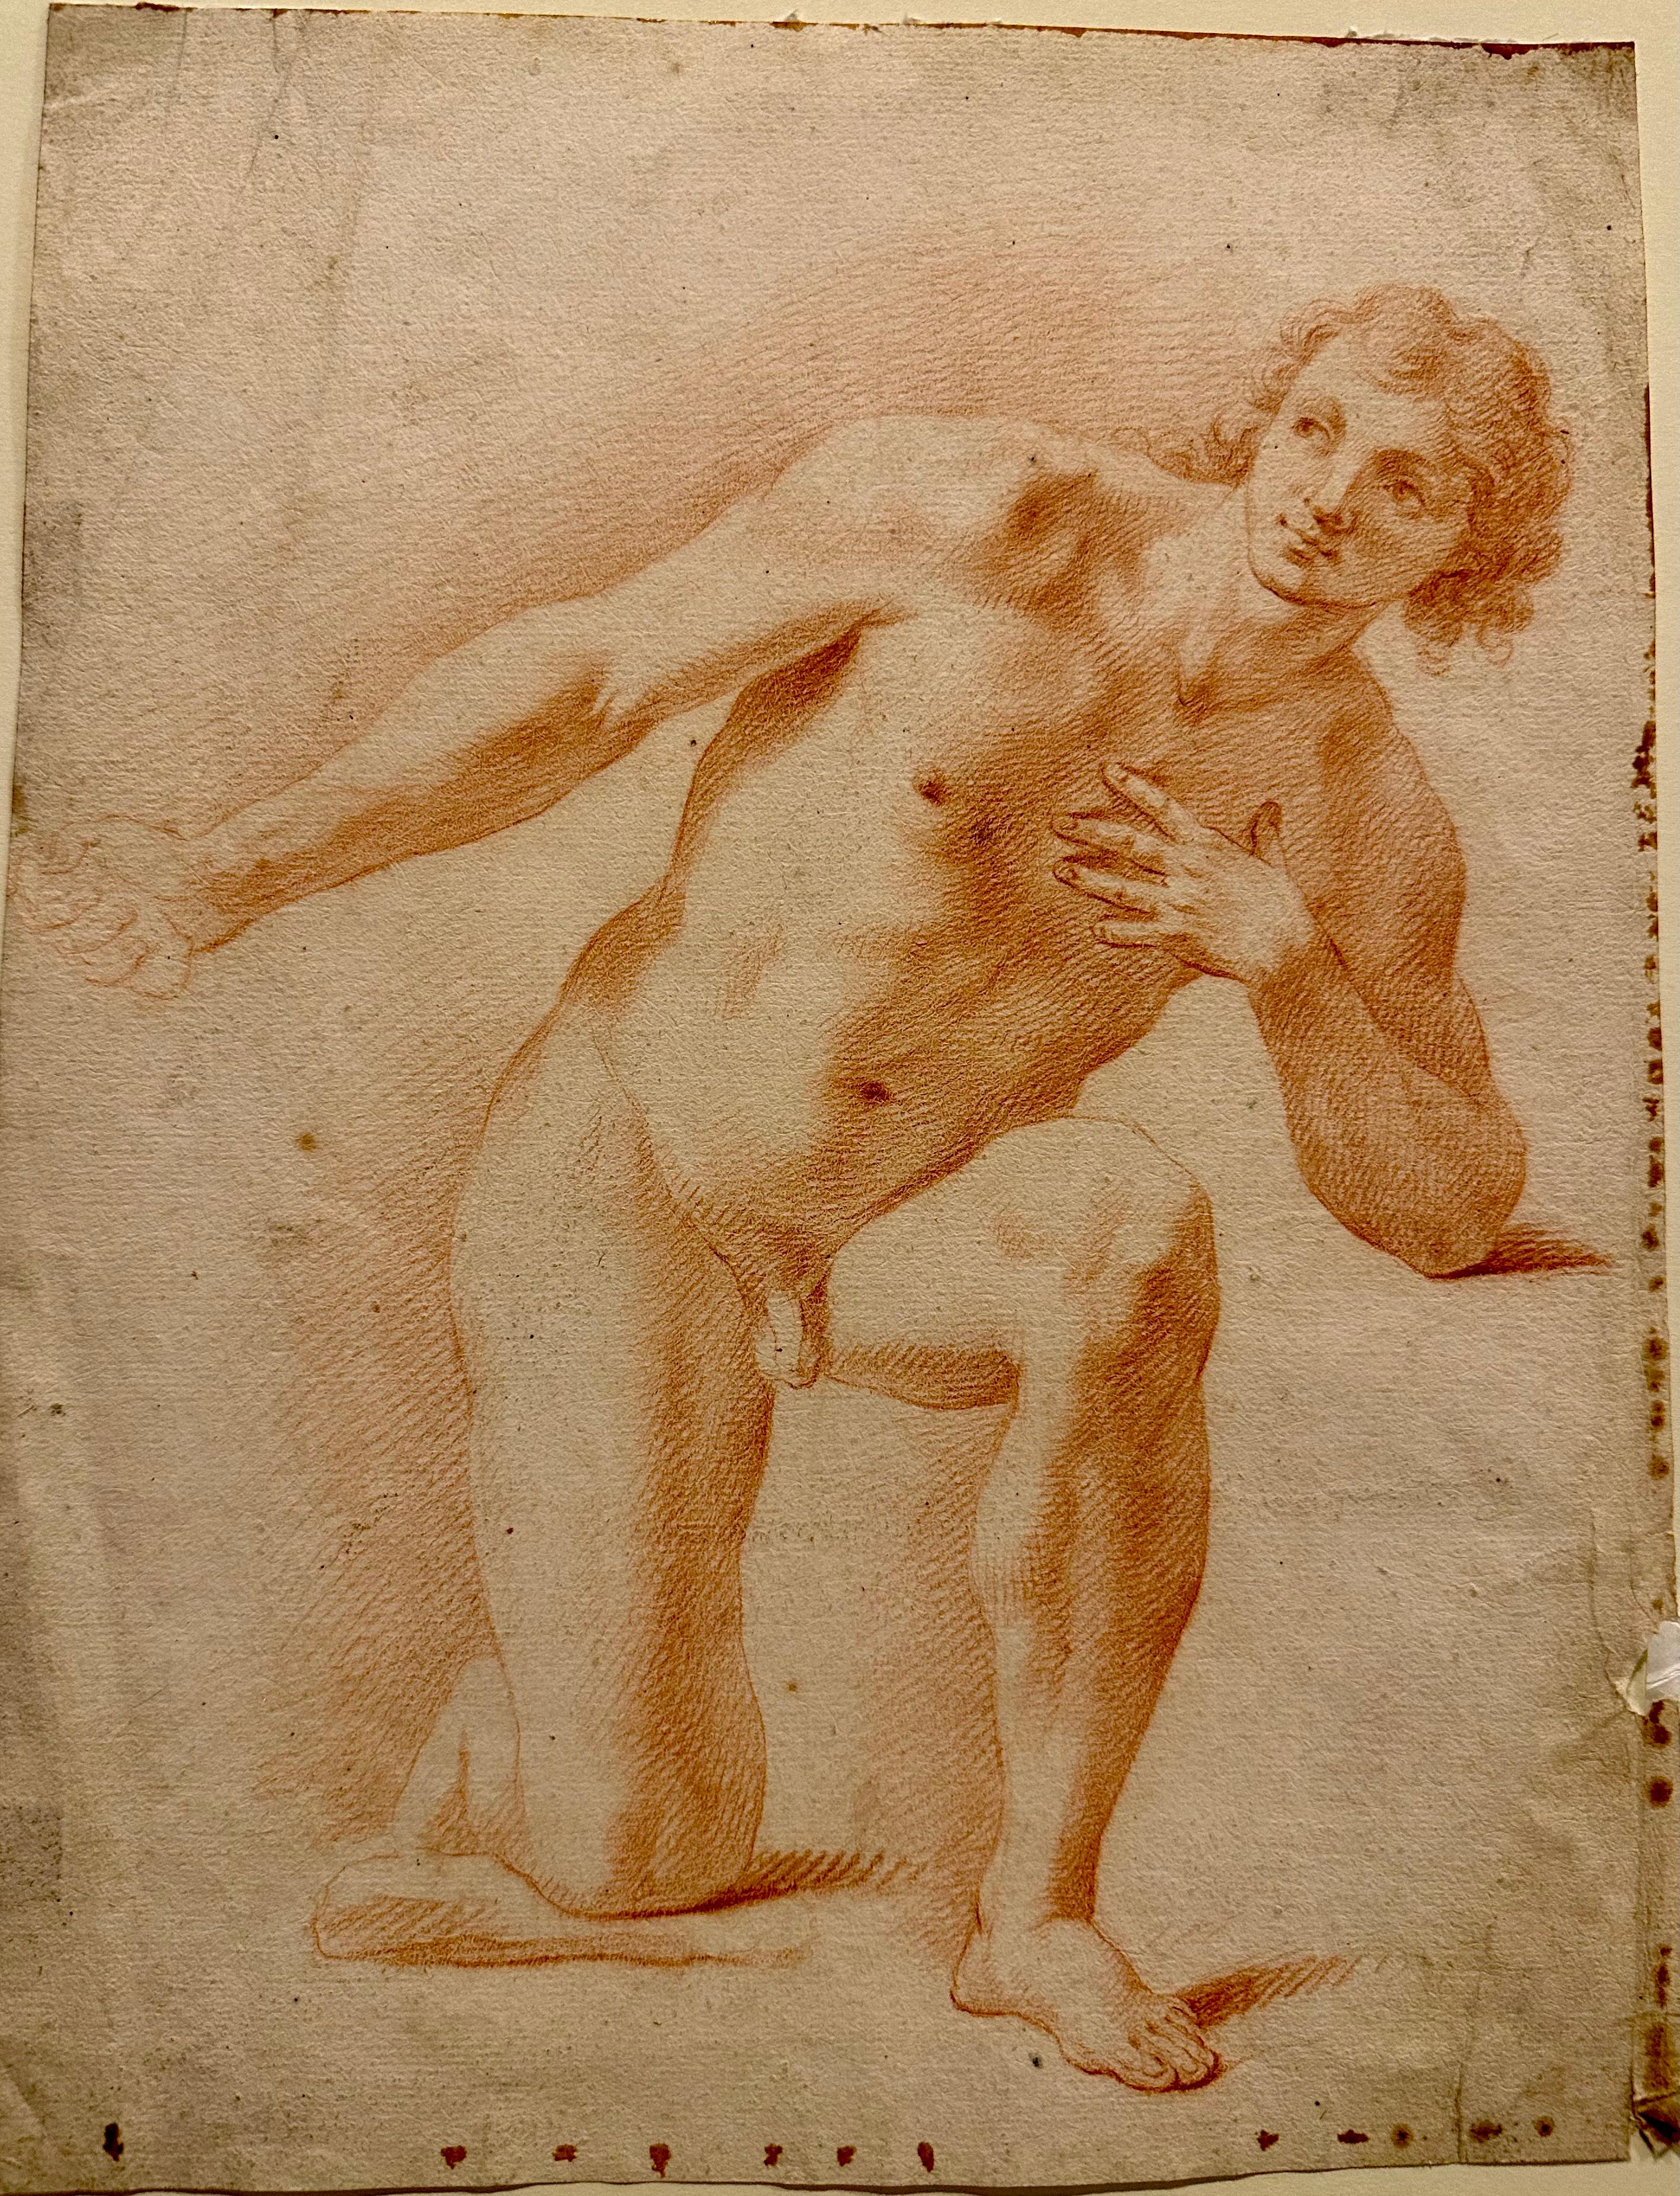 Italienische Bologneser Rötelzeichnung des späten 17. Jahrhunderts eines knienden jungen Mannes. CIRCA 1680

Diese Sanguine-Zeichnung ist in gutem Zustand. An den Rändern des Blattes sind kleine dunkelbraune Flecken zu sehen.

Diese Zeichnung vom